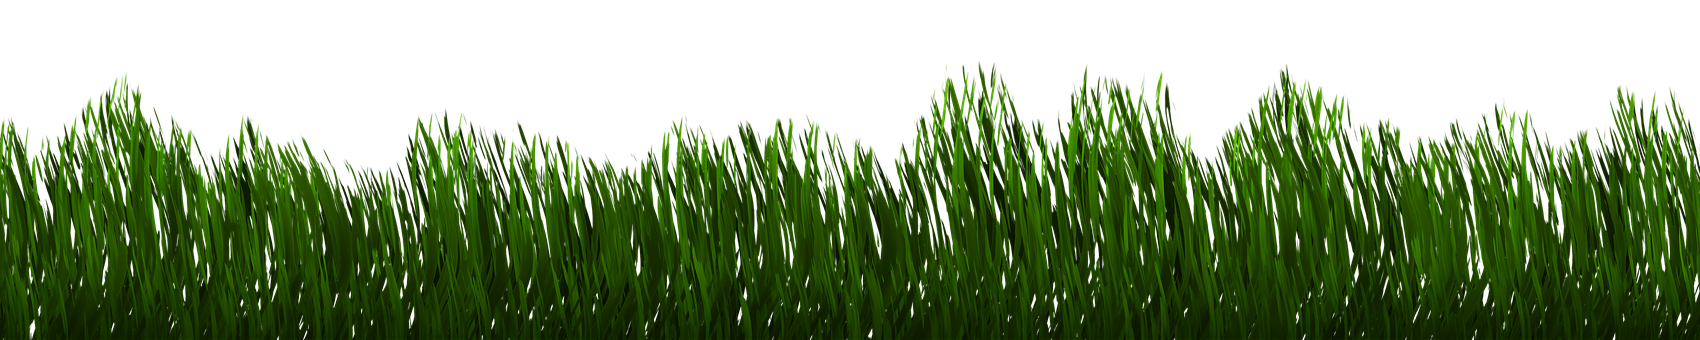 A Close Up Of Grass